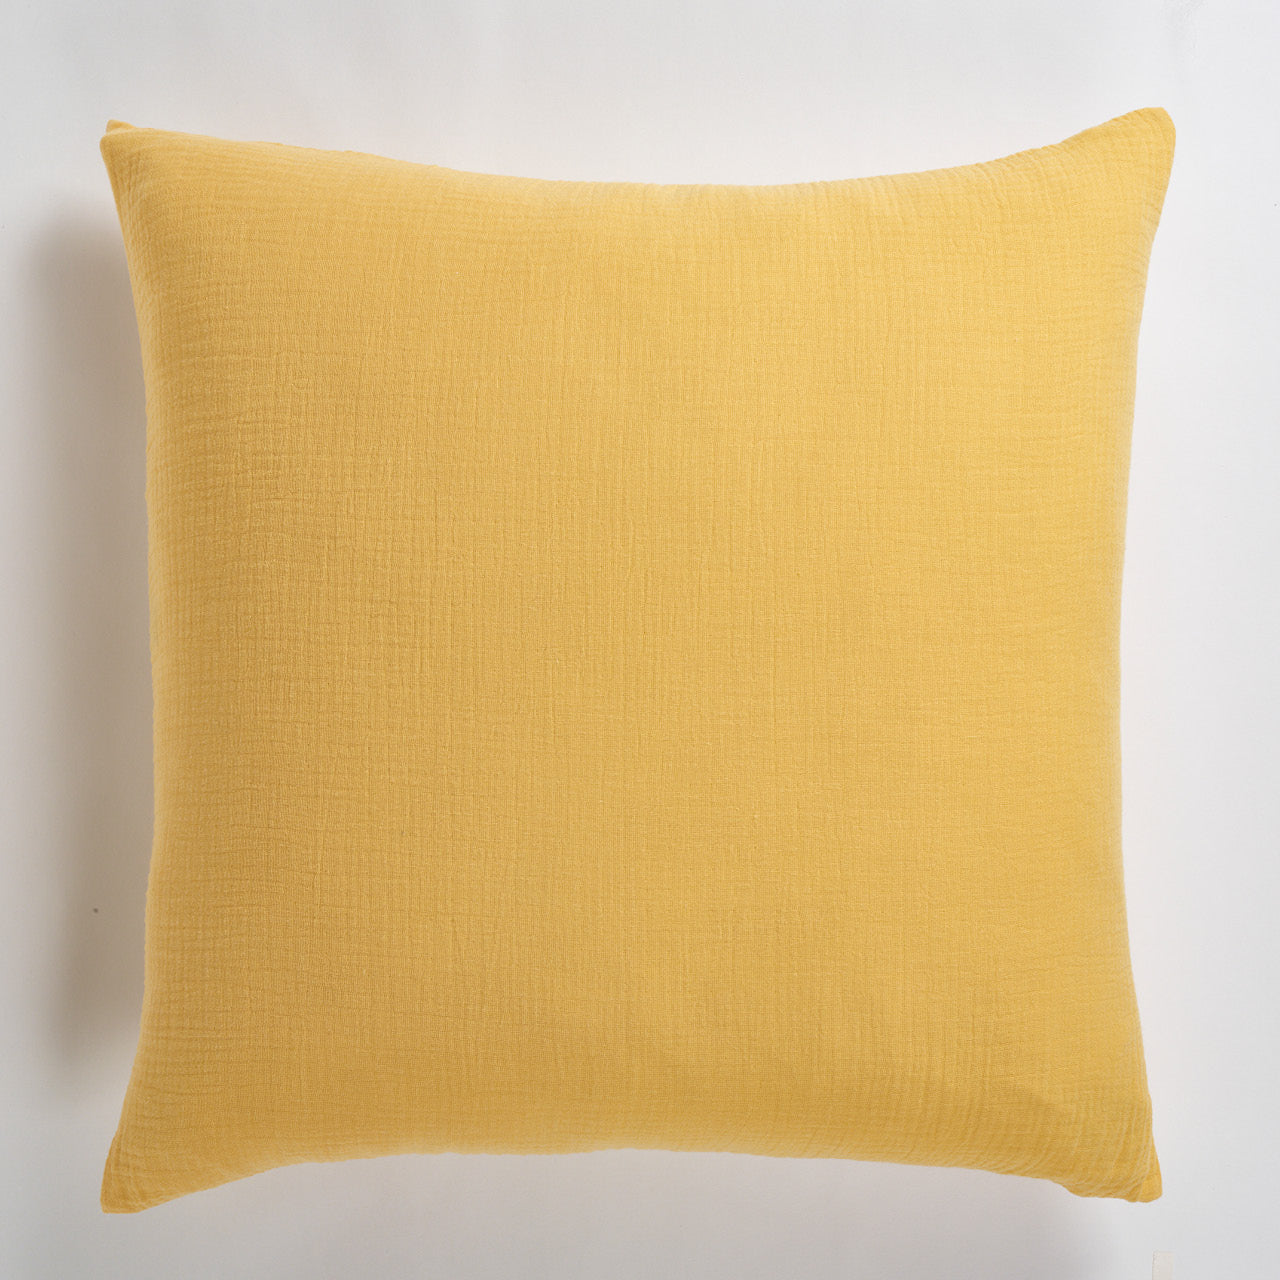 Saffron European Pillowcase on a white background